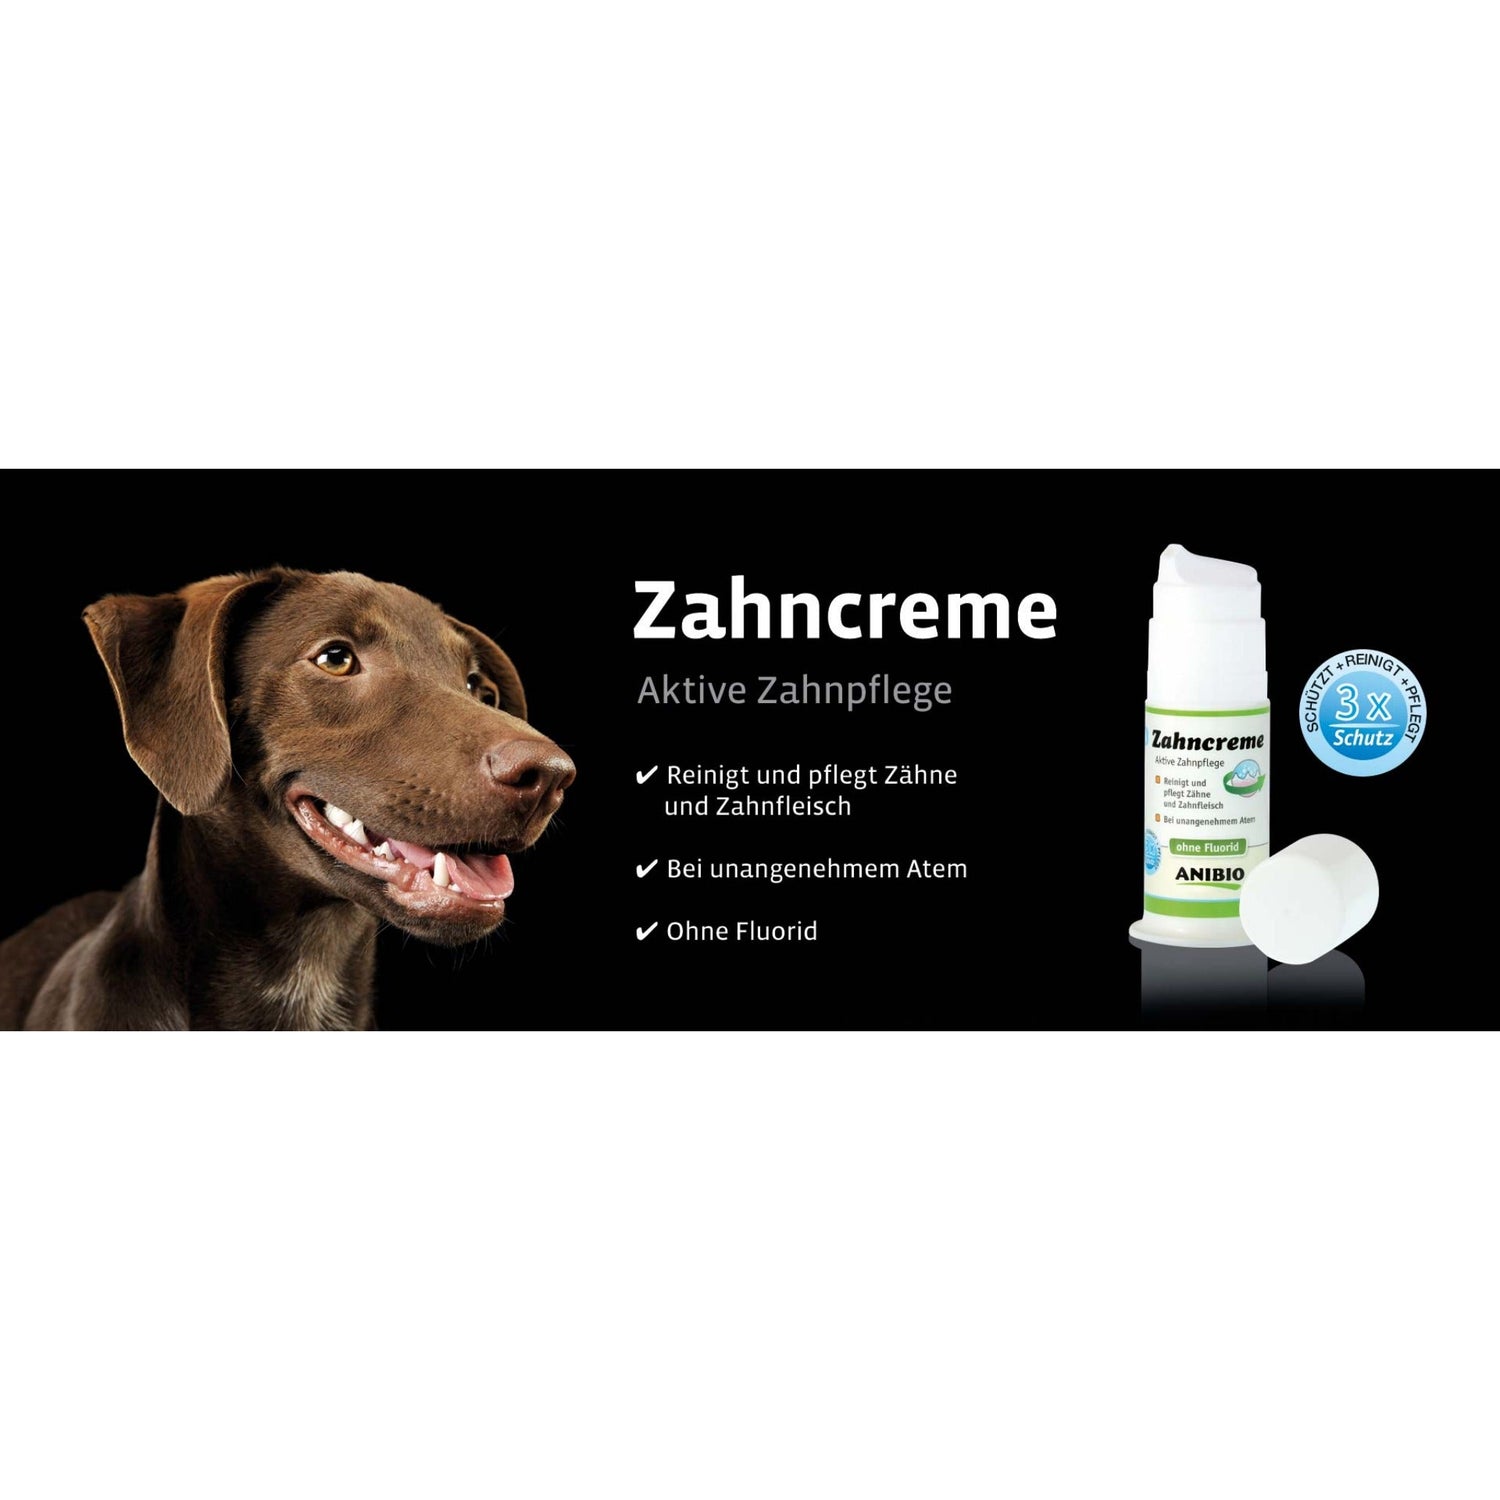 ANIBIO Zahncreme, Aktive Zahnpflege für Hunde - Woofshack